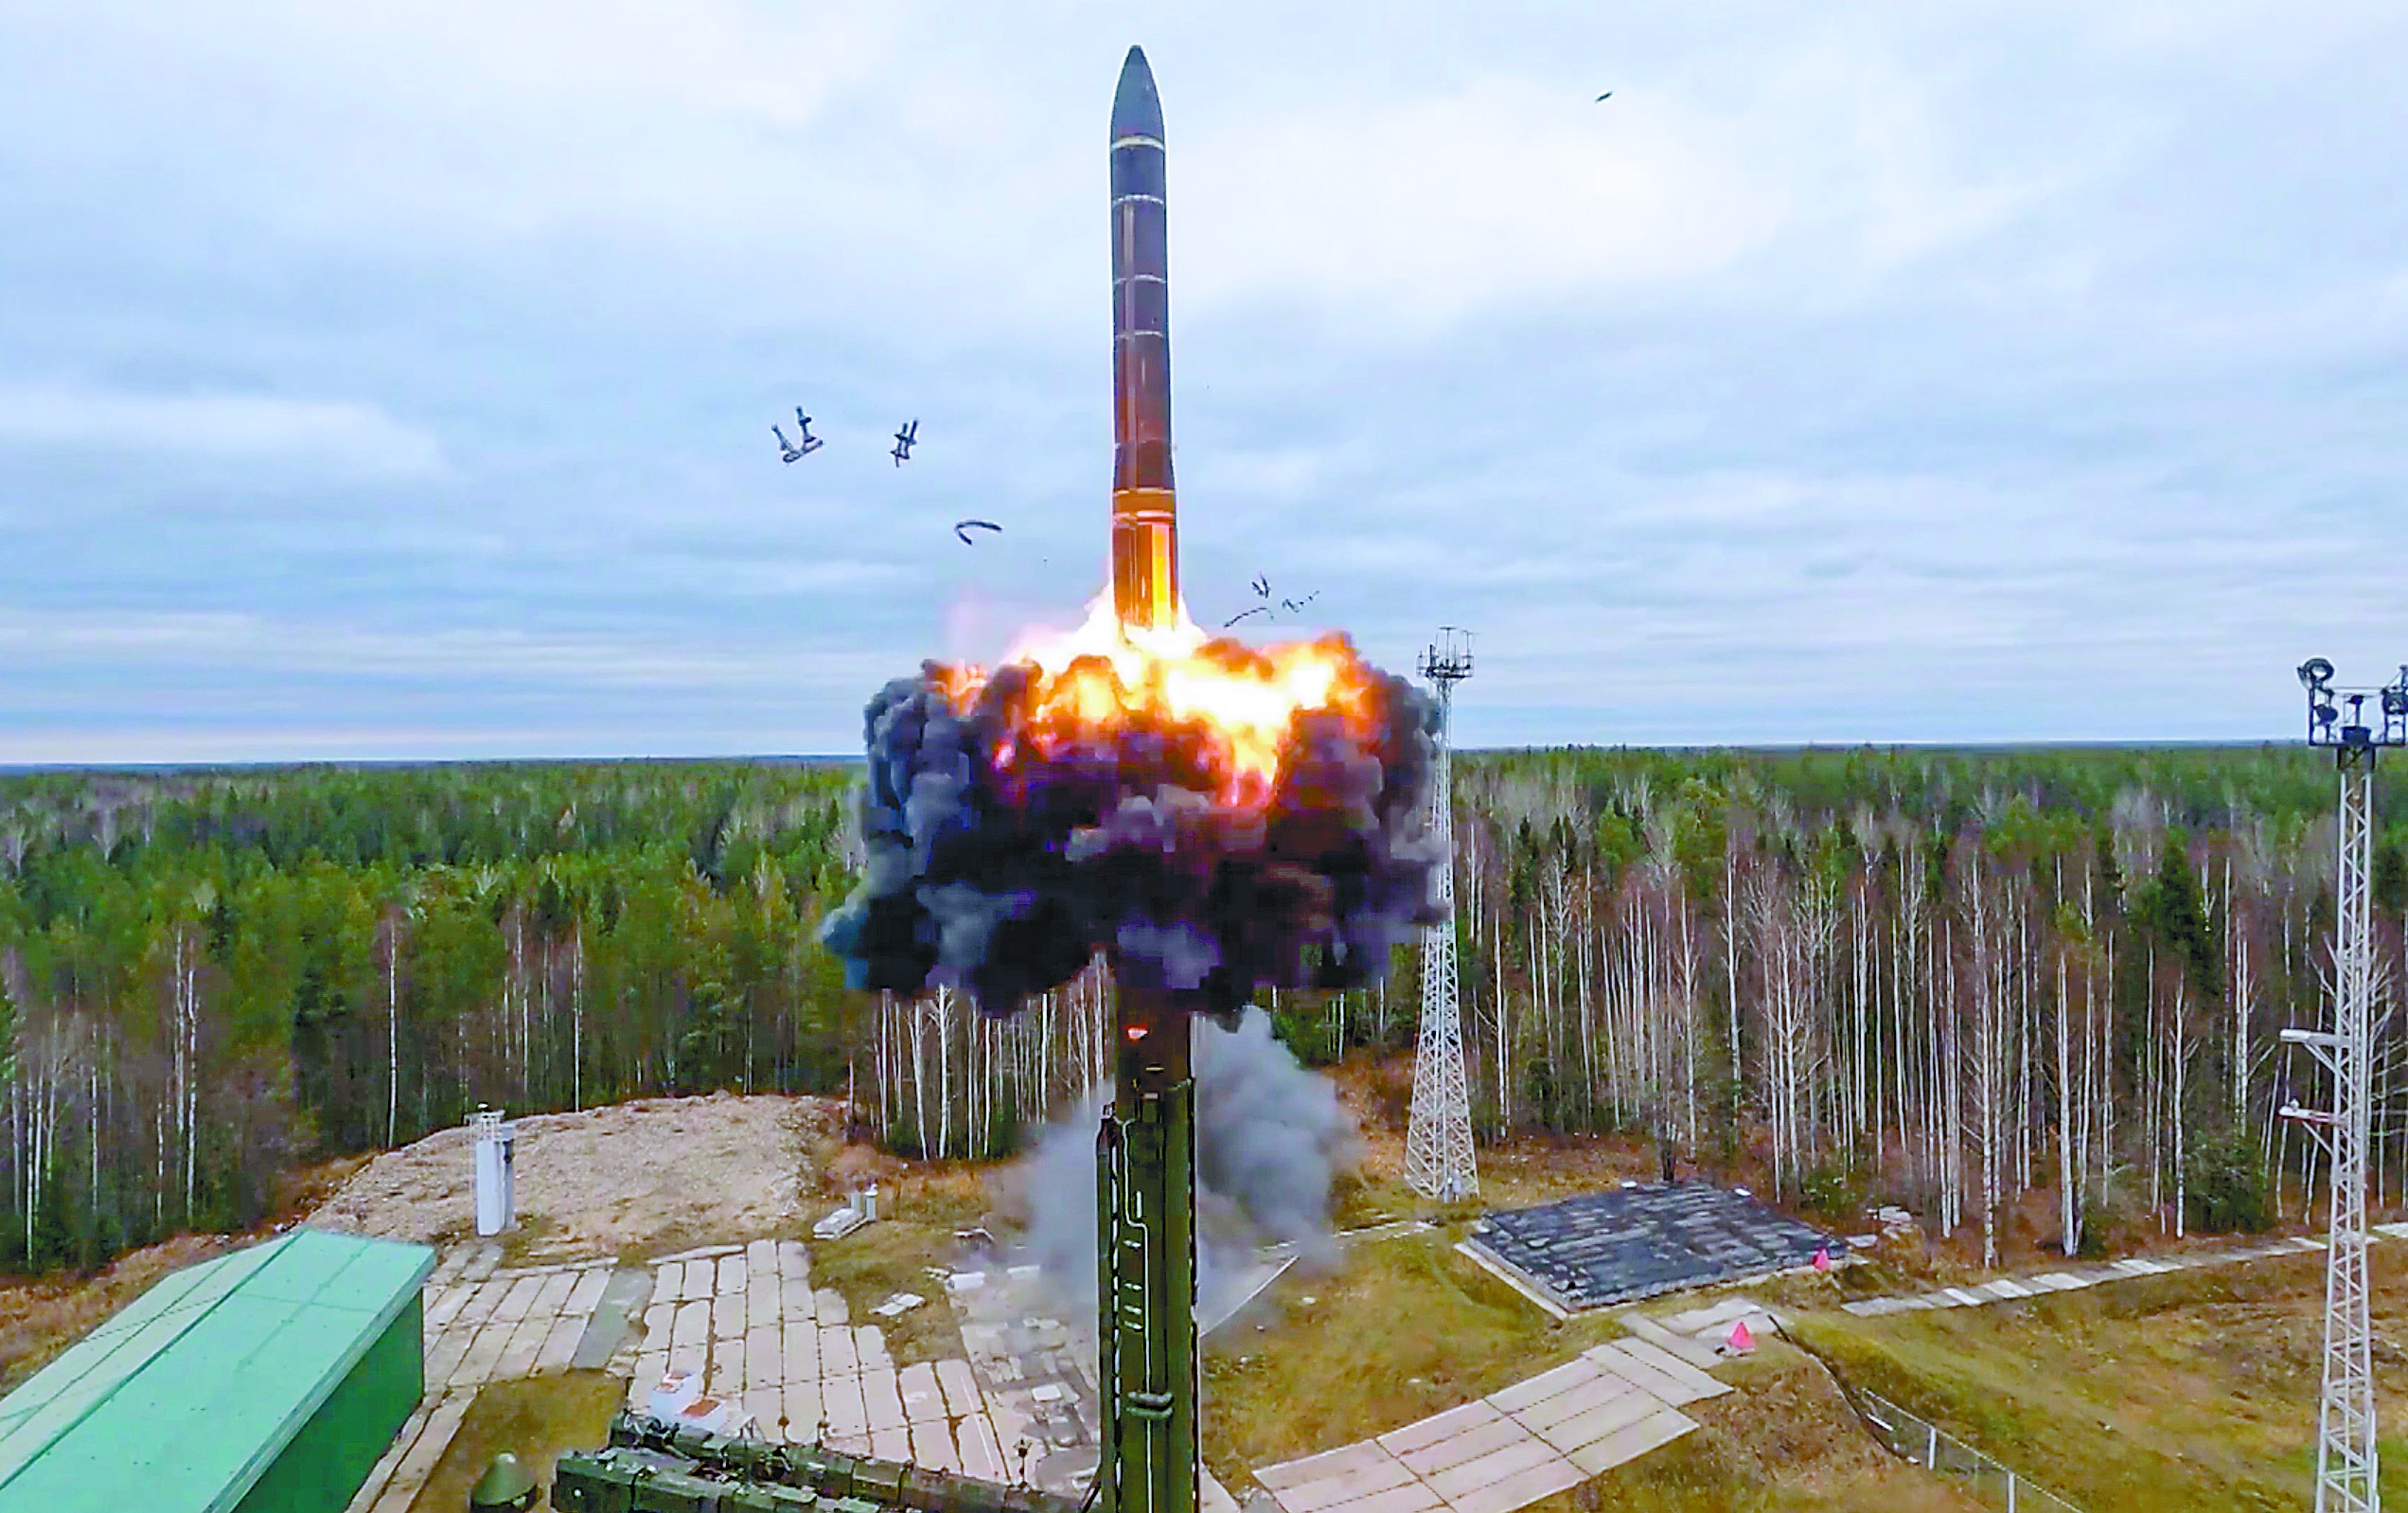 26日,俄罗斯试射了一枚亚尔斯洲际弹道导弹,作为俄罗斯核演习的一